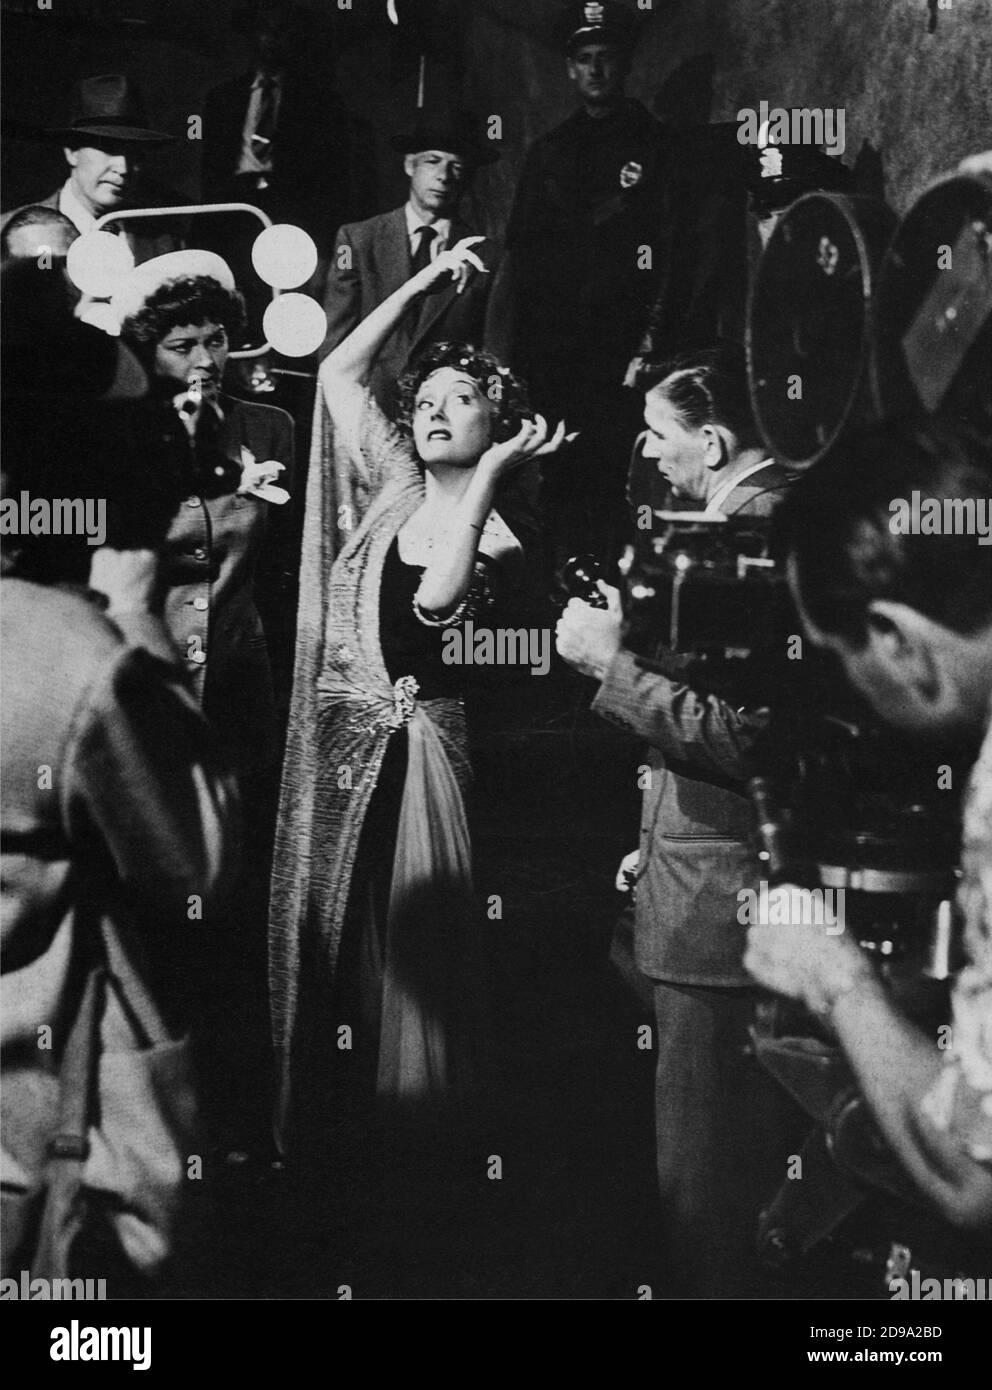 1951 : l'actrice Gloria SWANSON ( Chicago 1898 - New York 1983 ) comme Norma Desmond dans SUNSET BOULEVARD ( Viale del Tramonto ) par Billy Wilder, costume par Edith HEAD , Paramount pubblicity encore - FILM - CINÉMA - atrice cinematografica - VAMP - spalla - spalle - épaule - épaules - DIVA - DIVINA - DIVIN - Hollywood sur Hollywood - assassina - tueur - Salomè - voile - velo - mani - mains - danza - danse - imbécile - Mad - pazza - pazzo - matto - malato di mente --- Archivio GBB Banque D'Images